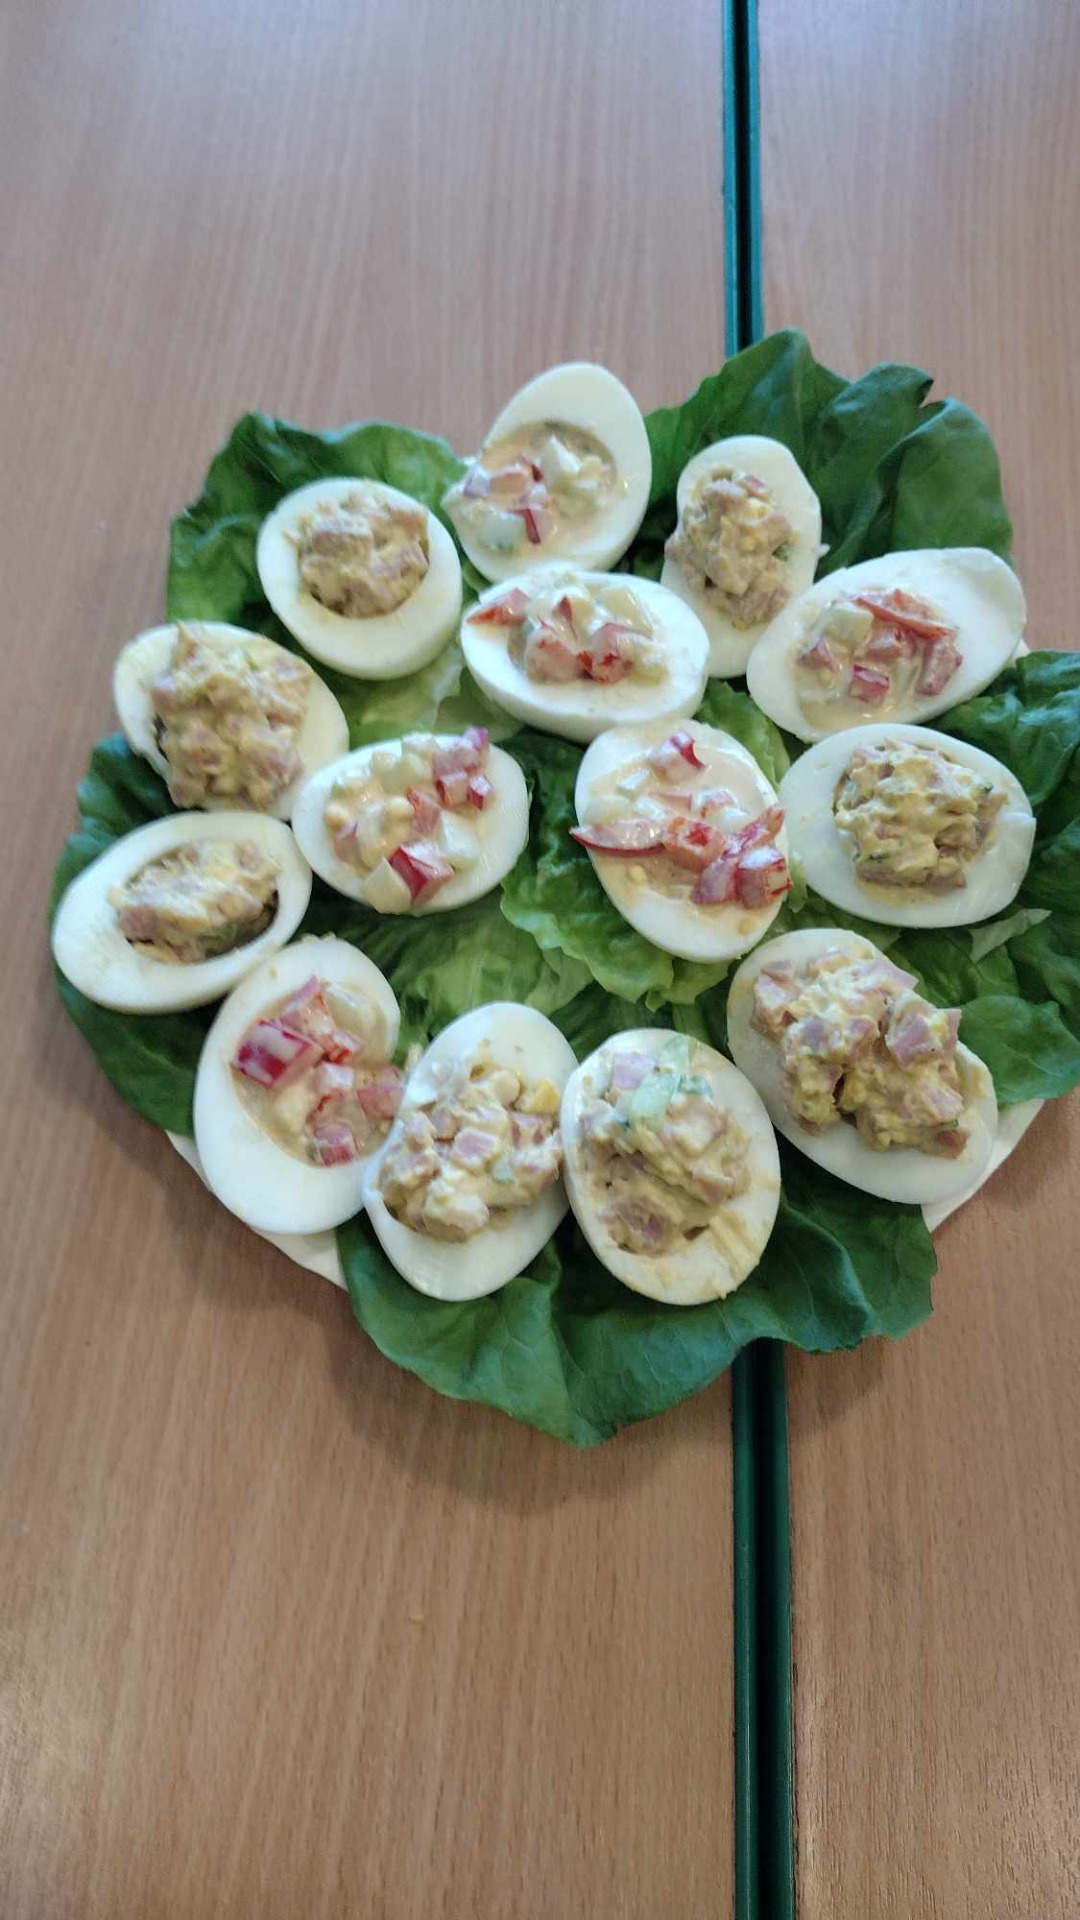 Jajka faszerowane ułożone na liściach sałaty na talerzu.